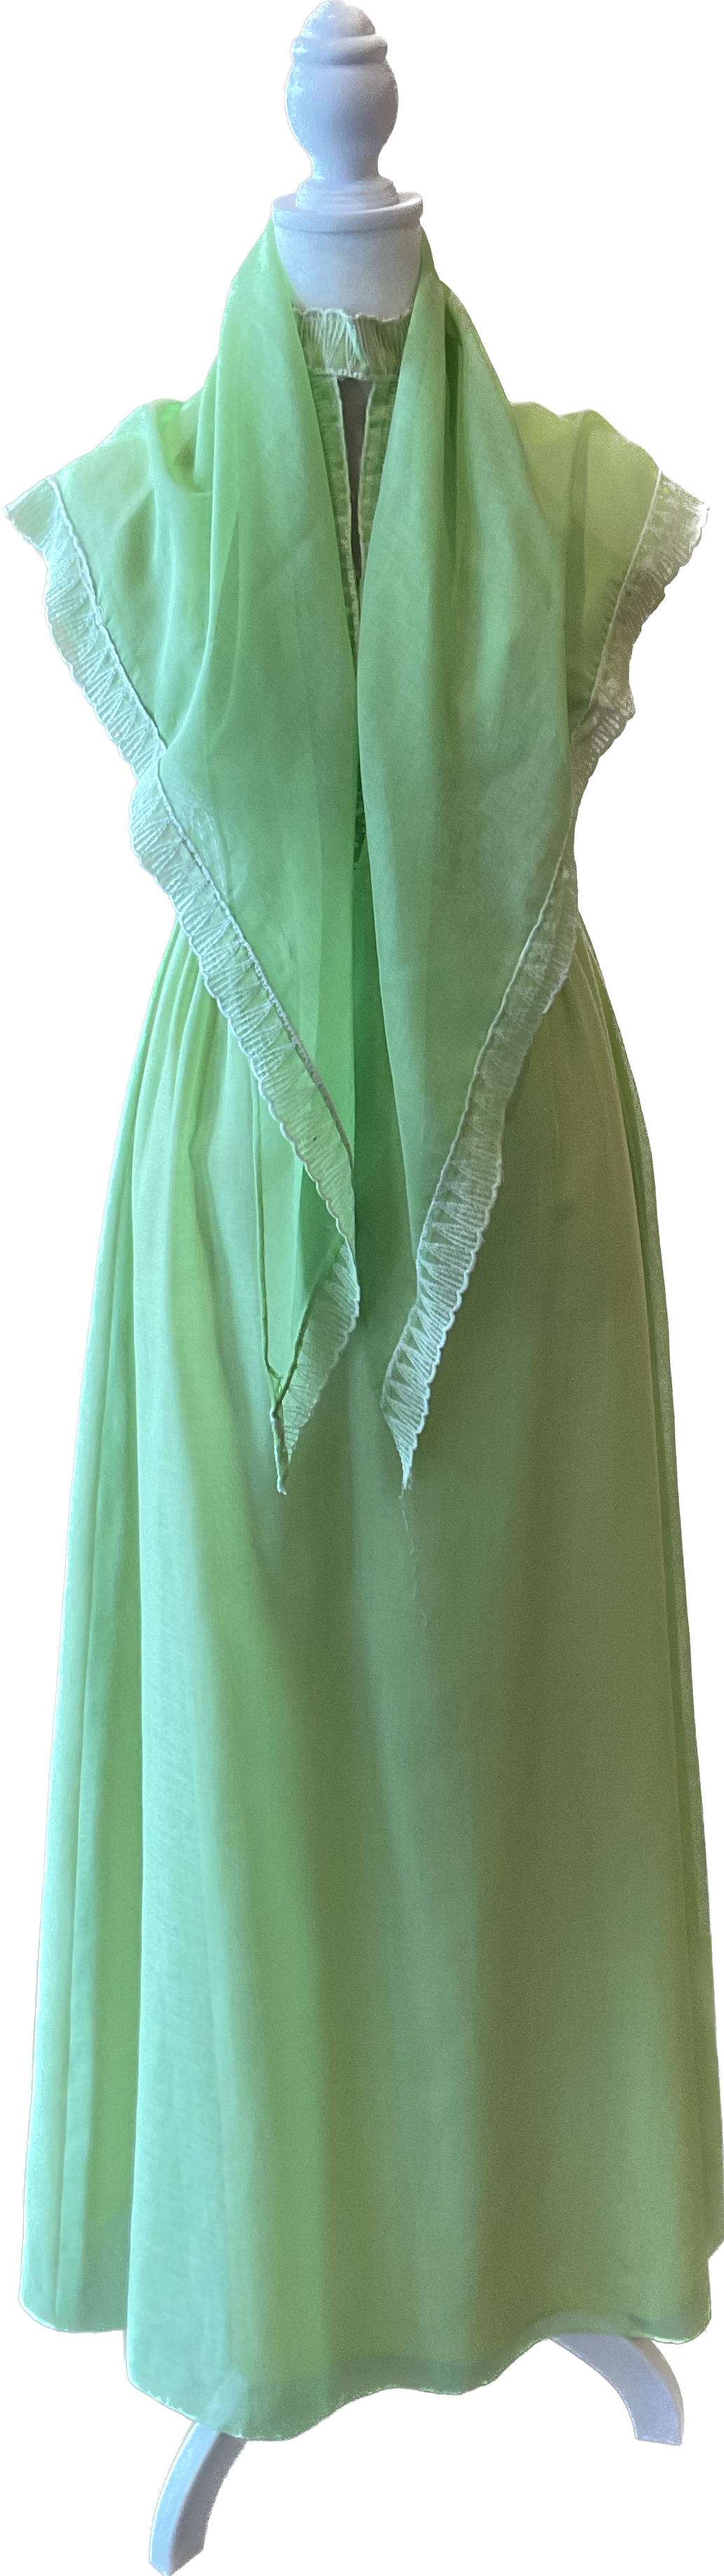 Vintage 60s/70s Lime Green Halter Dress